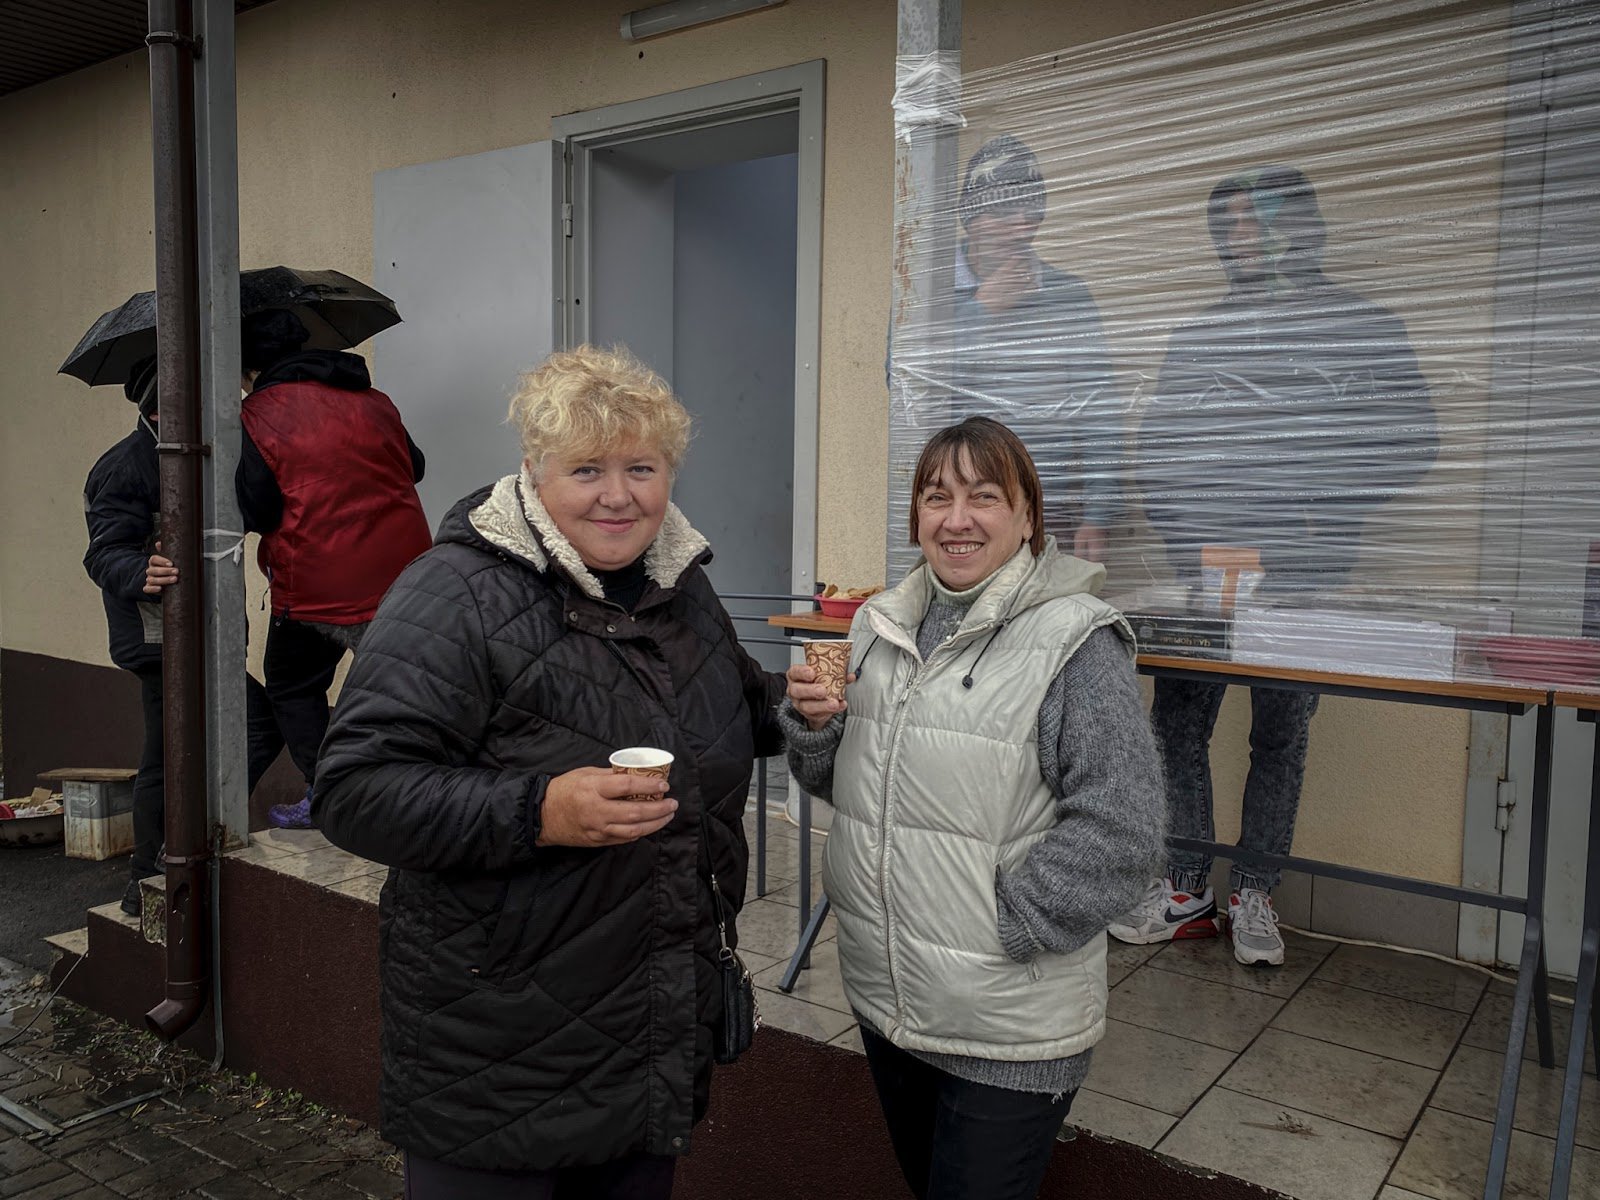 Свахи Людмила (ліворуч) і Наталя радіють можливості гуляти та спілкуватися вільно, якої були позбавлені в російській окупації